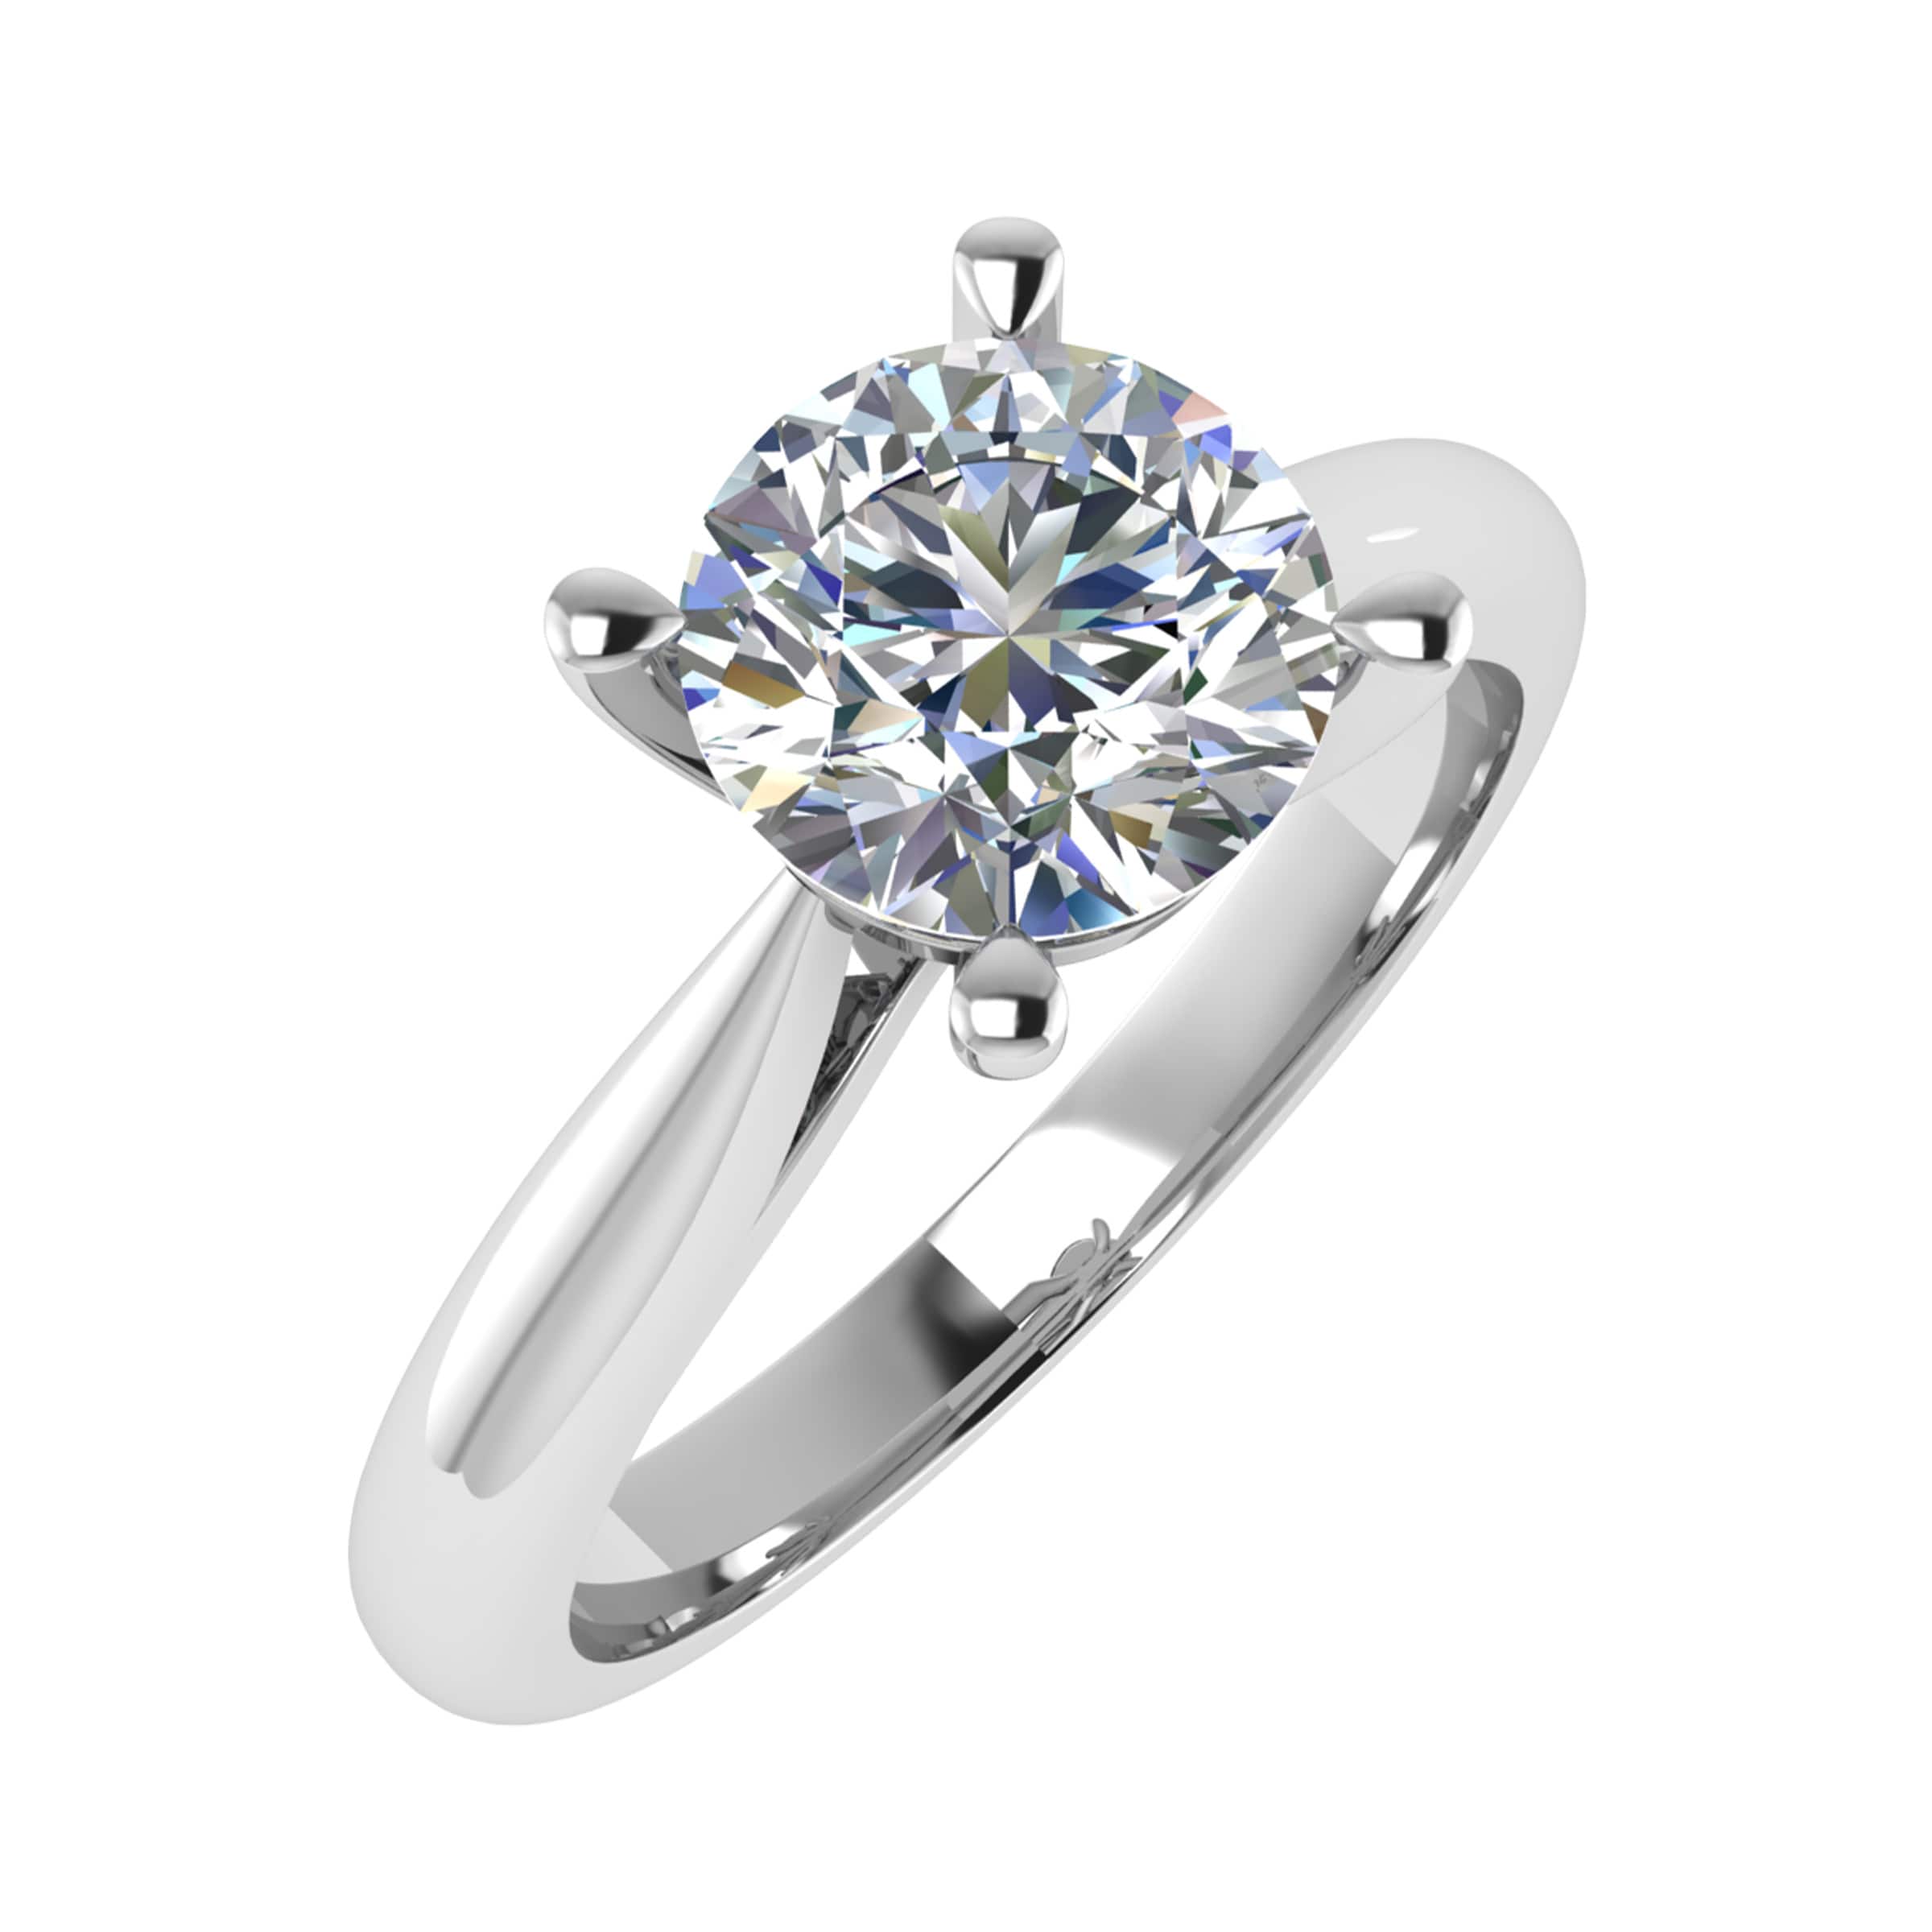 Alvina 1.00 Carat Lab Grown Round Cut Diamond Engagement Ring In Platinum